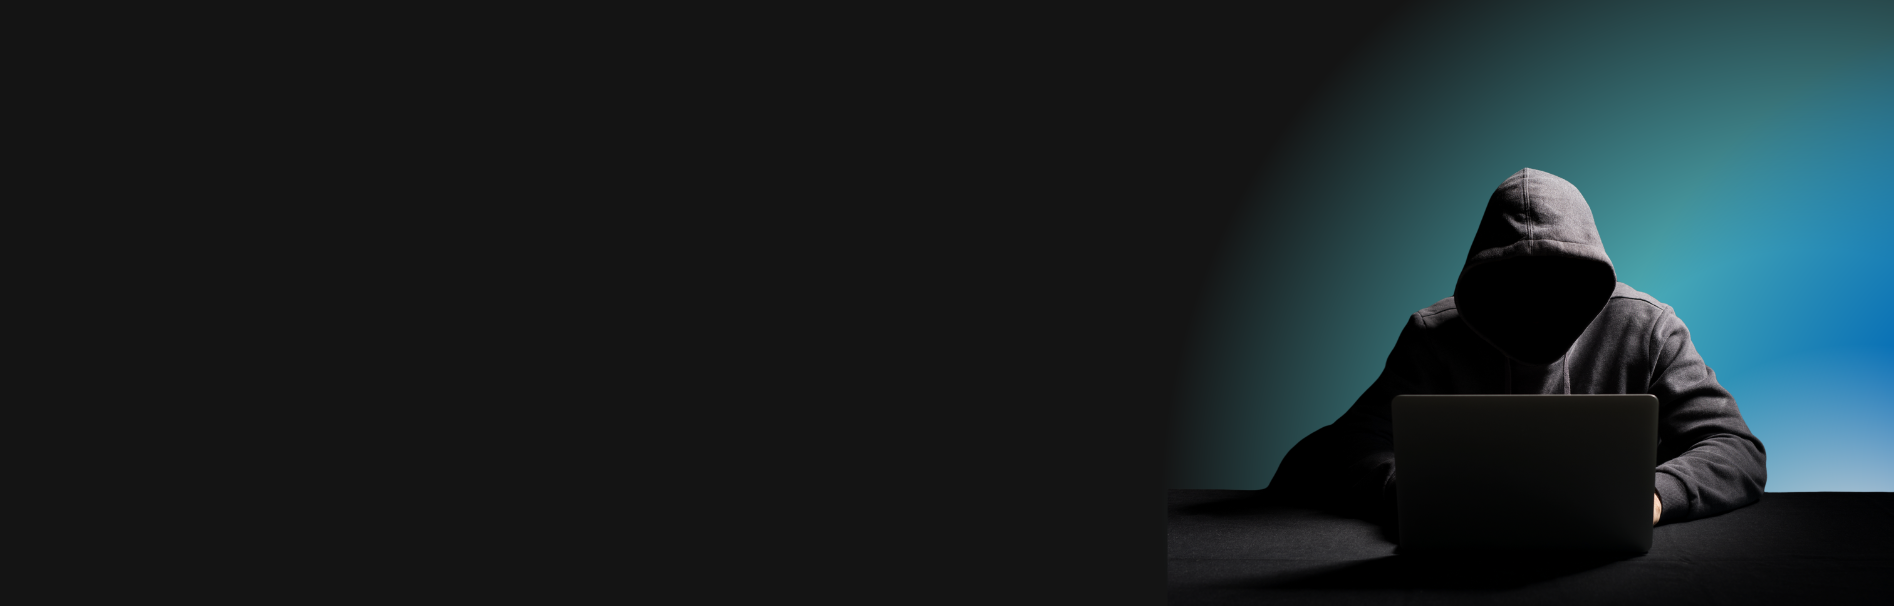 Silhueta de uma pessoa usando um capuz e sentada na frente de um laptop em uma mesa, com iluminação que projeta uma aura azulada sobre metade do fundo, enquanto a outra metade permanece escura, sugerindo atividades ocultas ou clandestinas relacionadas à cibersegurança.